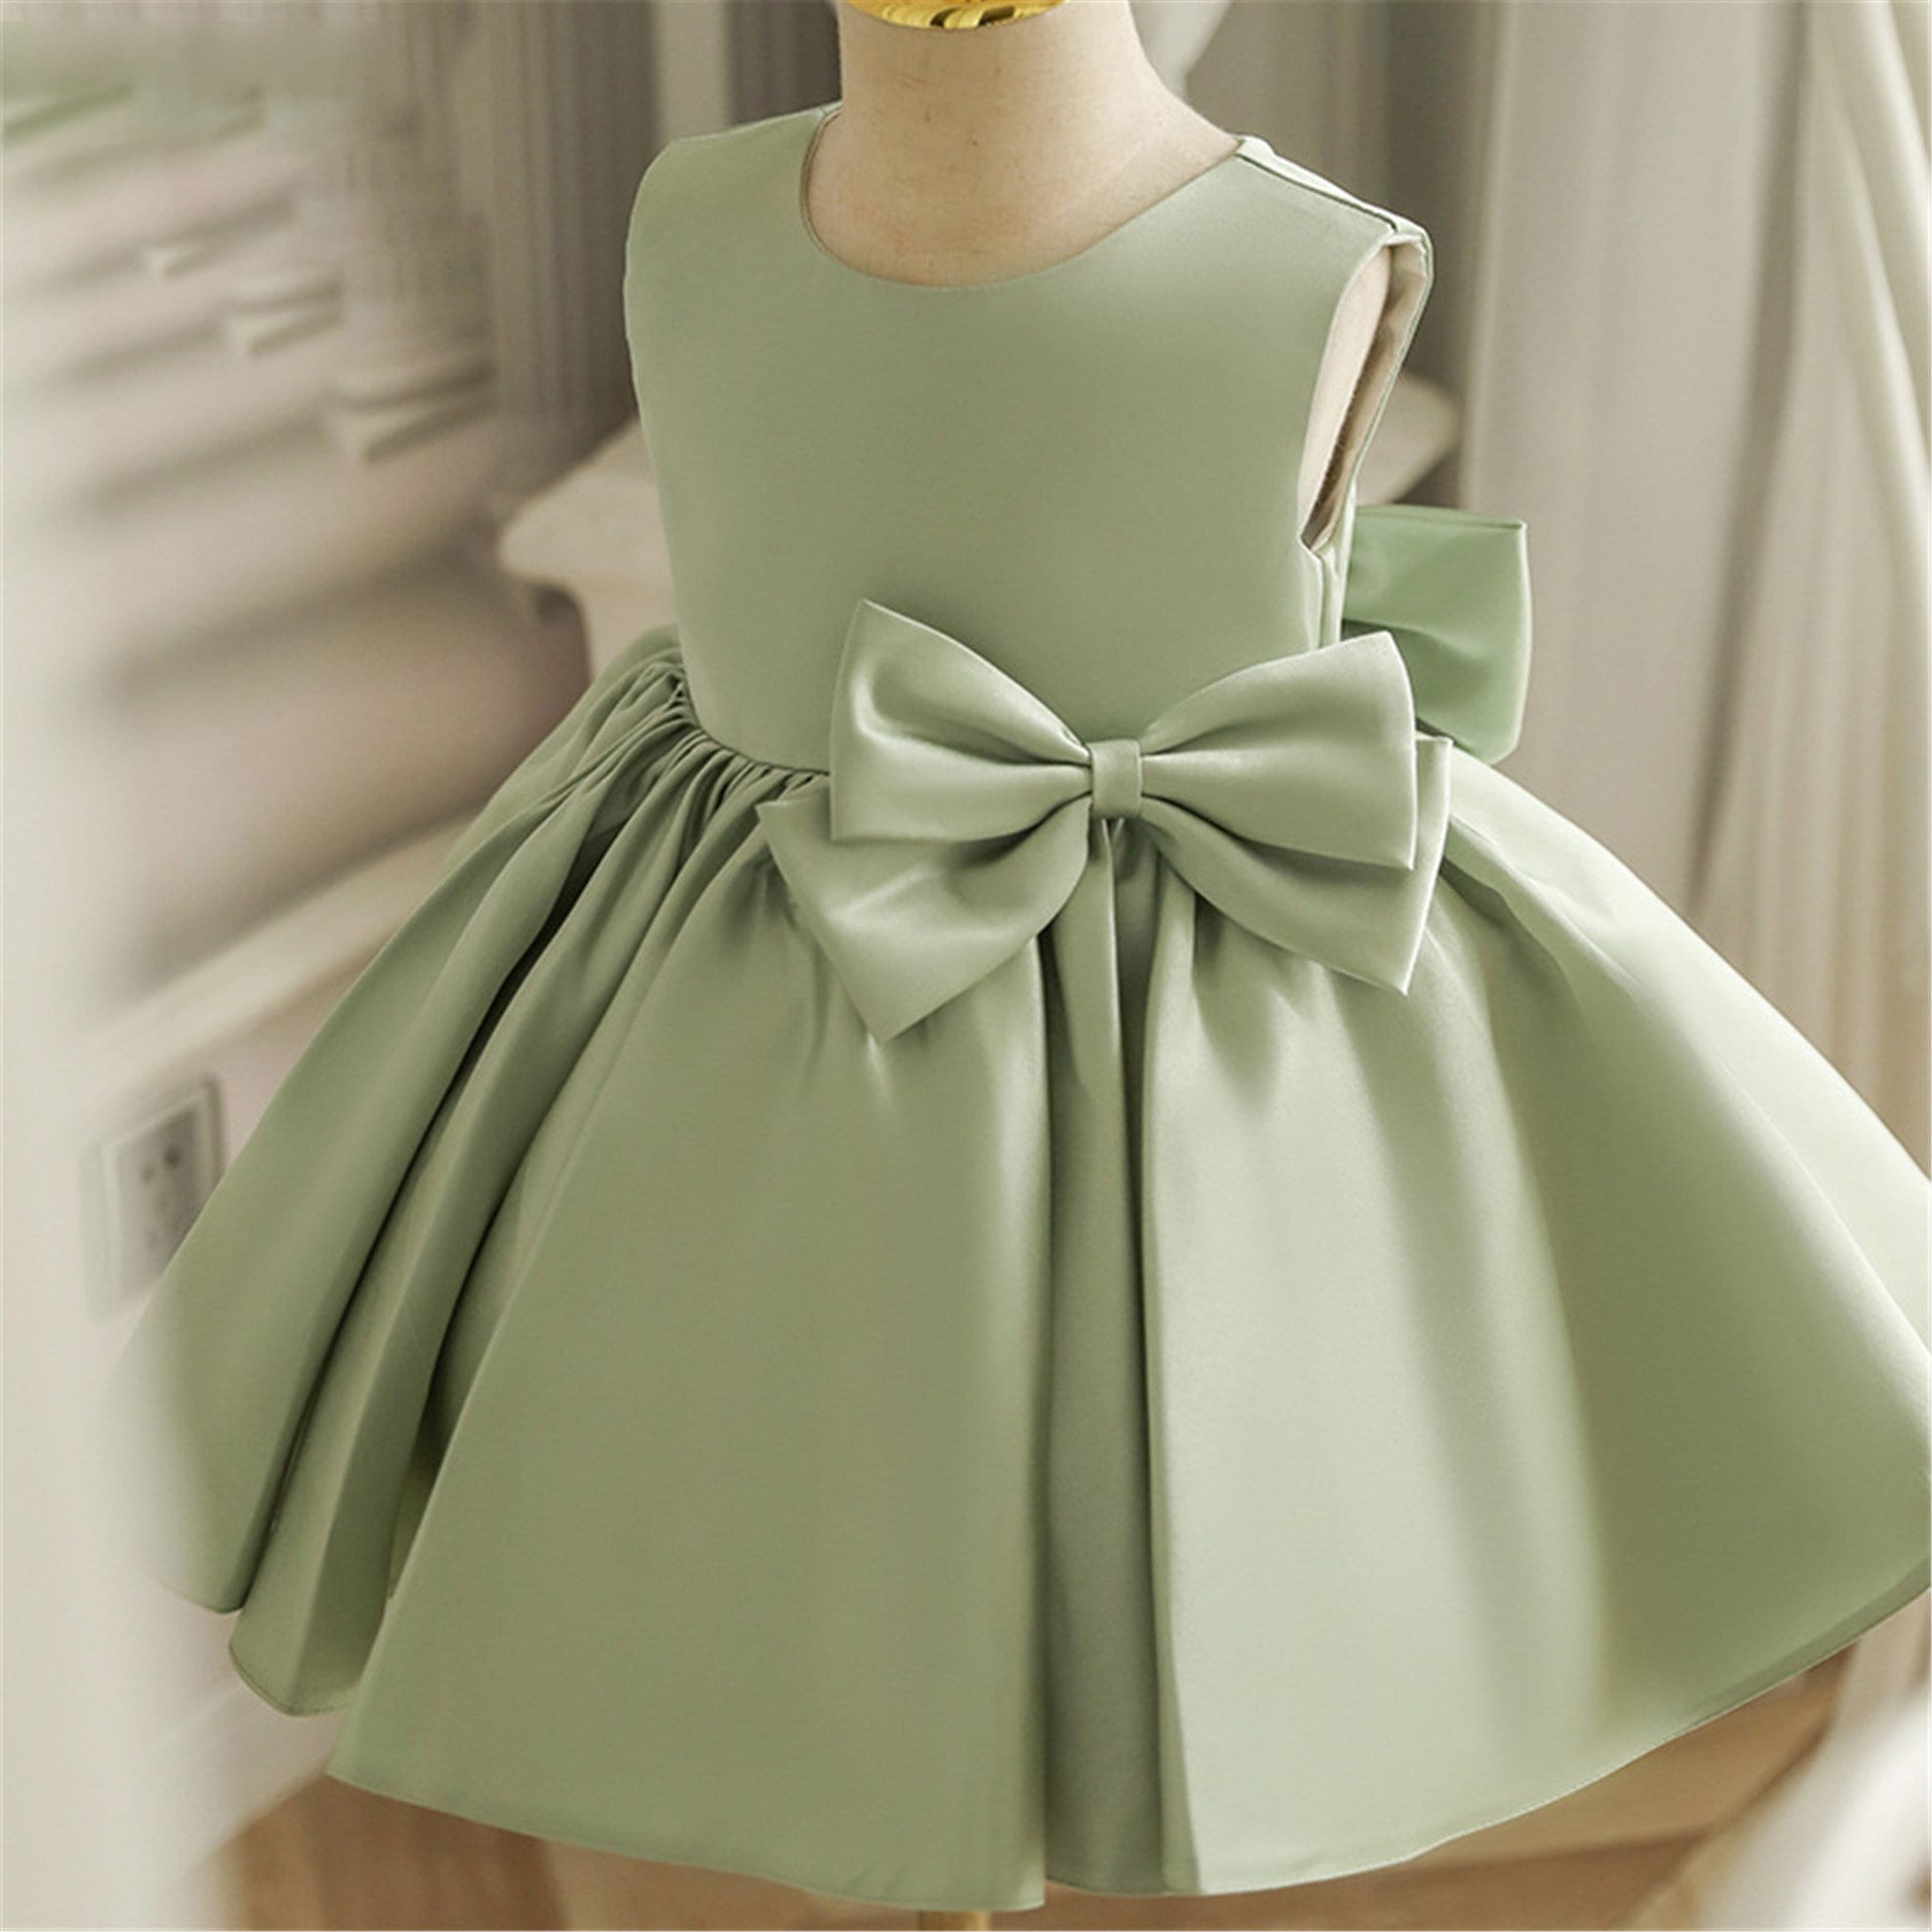 Lluvia Green | Short Silky A-line Dress